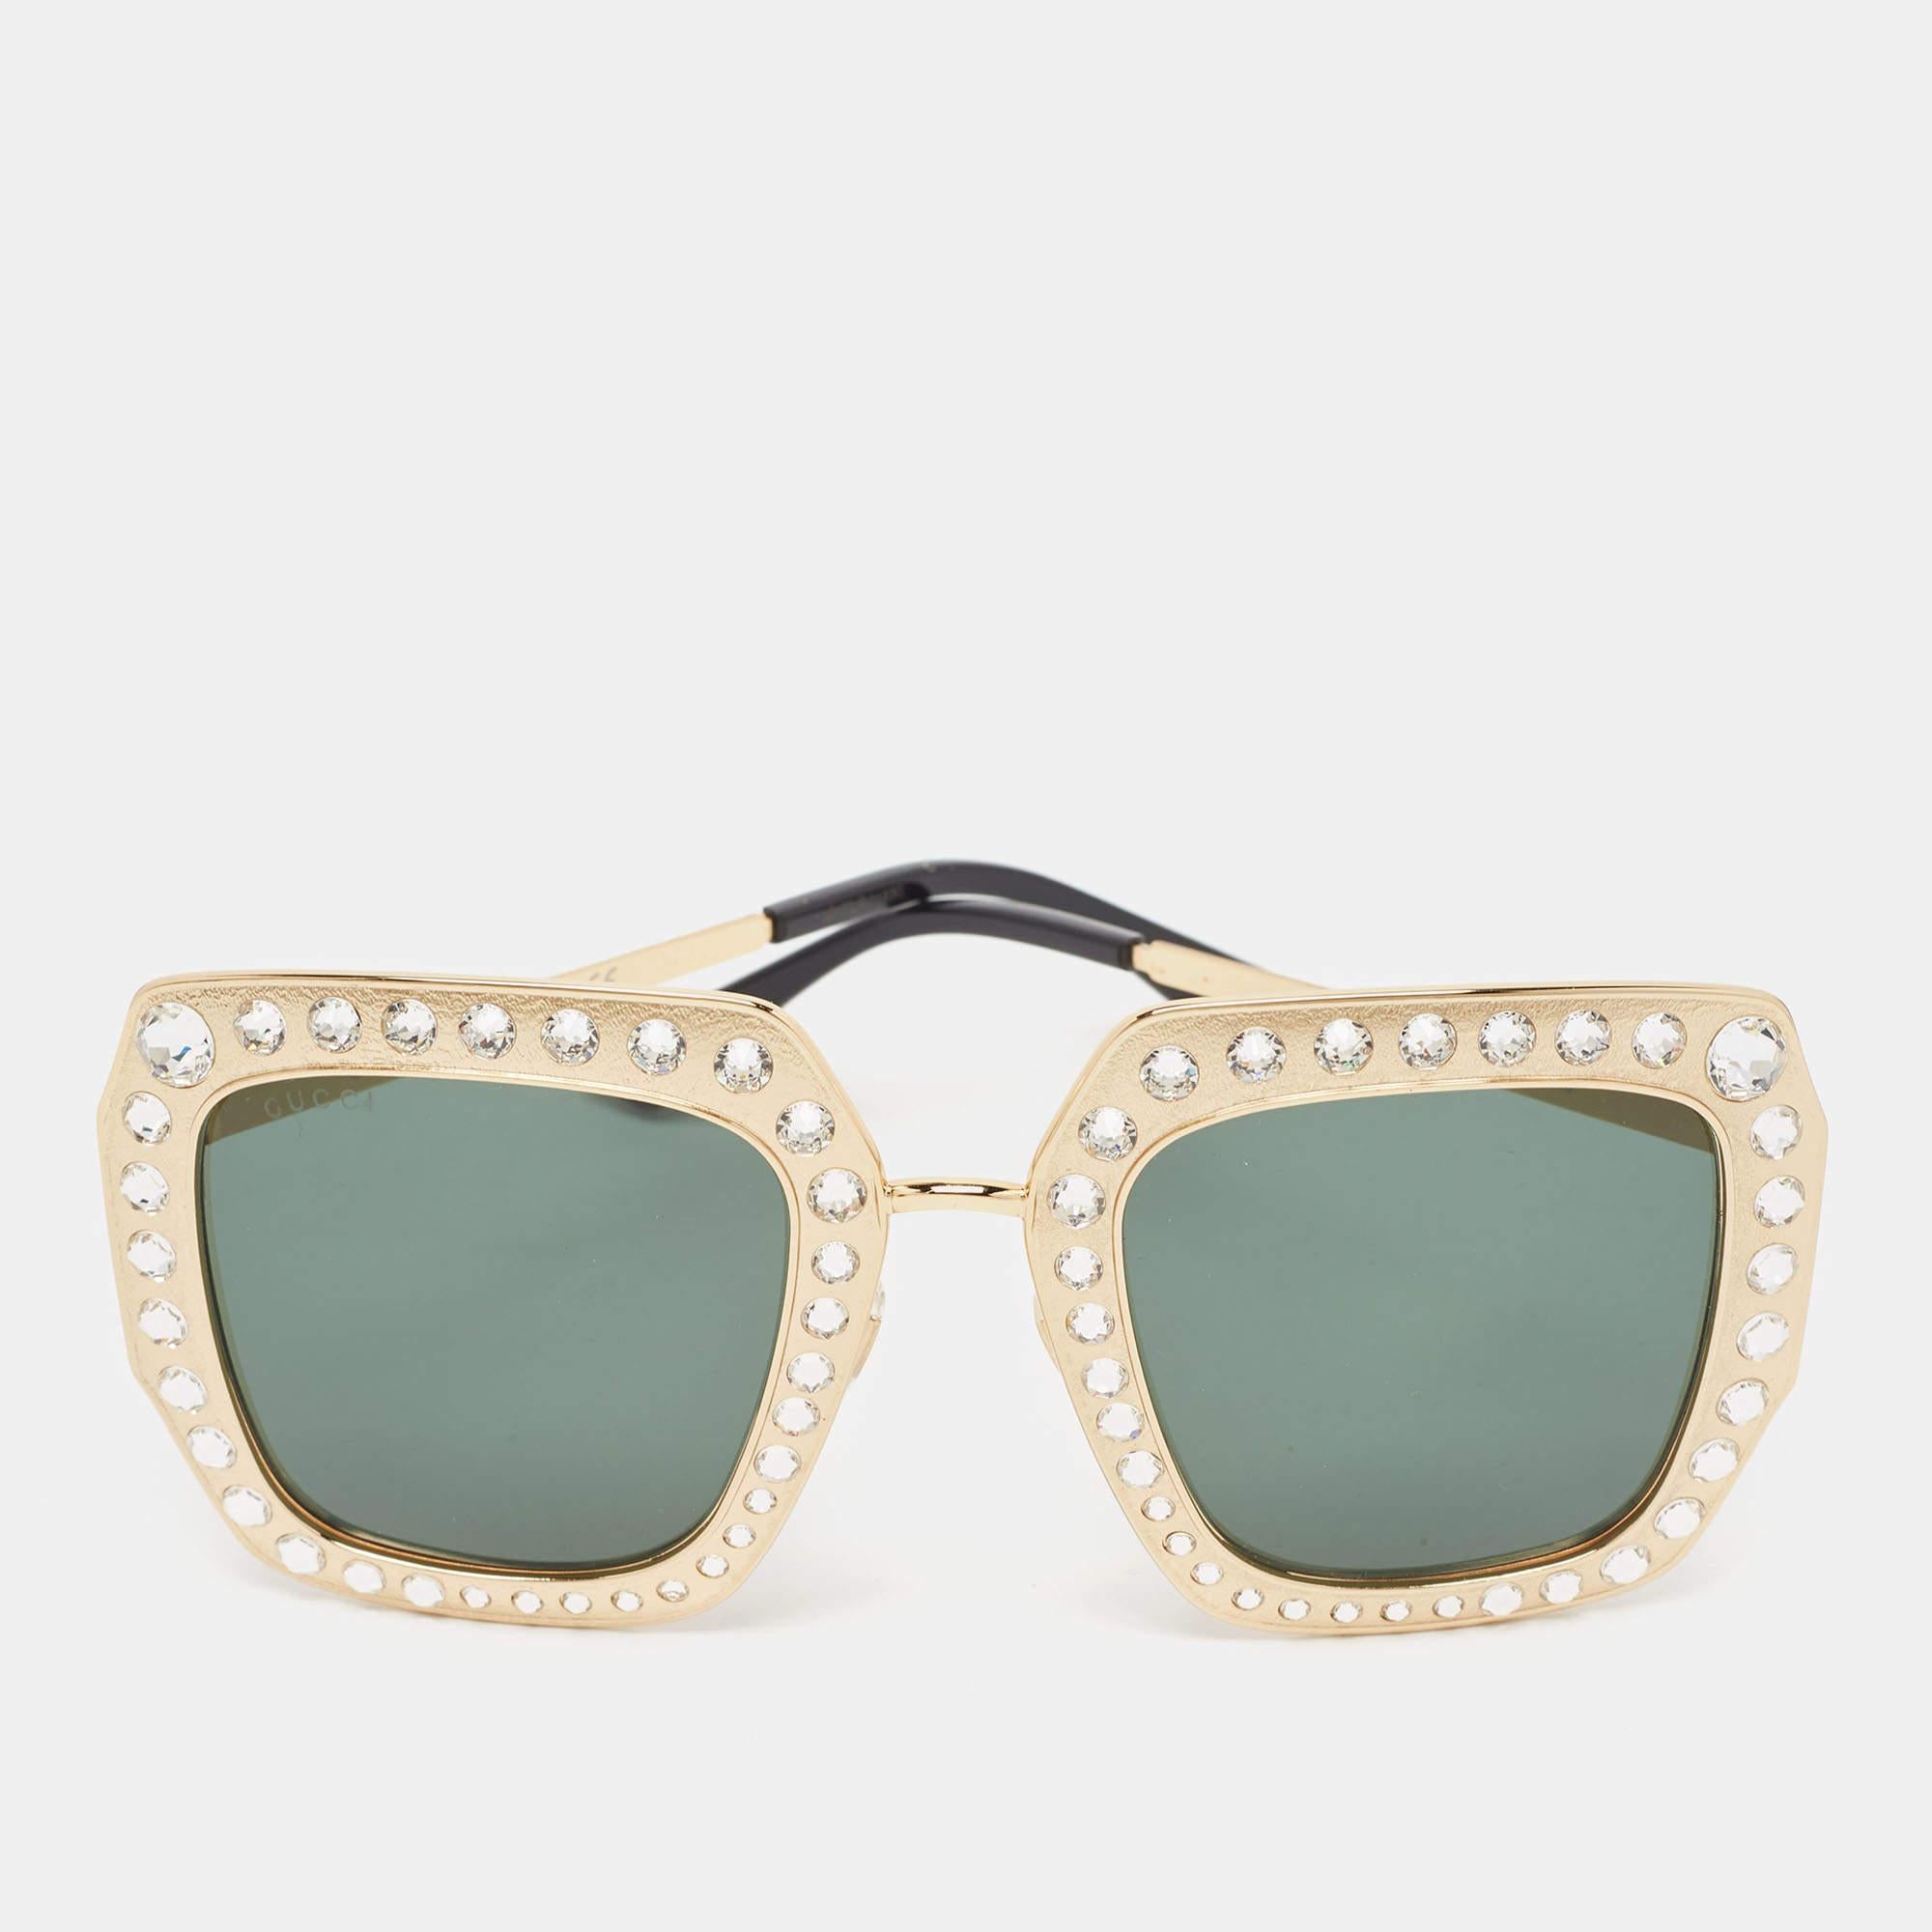 Diese Sonnenbrille von Gucci ist die ideale Wahl für einen Tag in der Sonne oder für Fotoshootings in Innenräumen. Es ist ein Accessoire mit Aussagekraft. Der goldfarbene Rahmen ist auf der Vorderseite mit Kristallen besetzt.

Enthält: